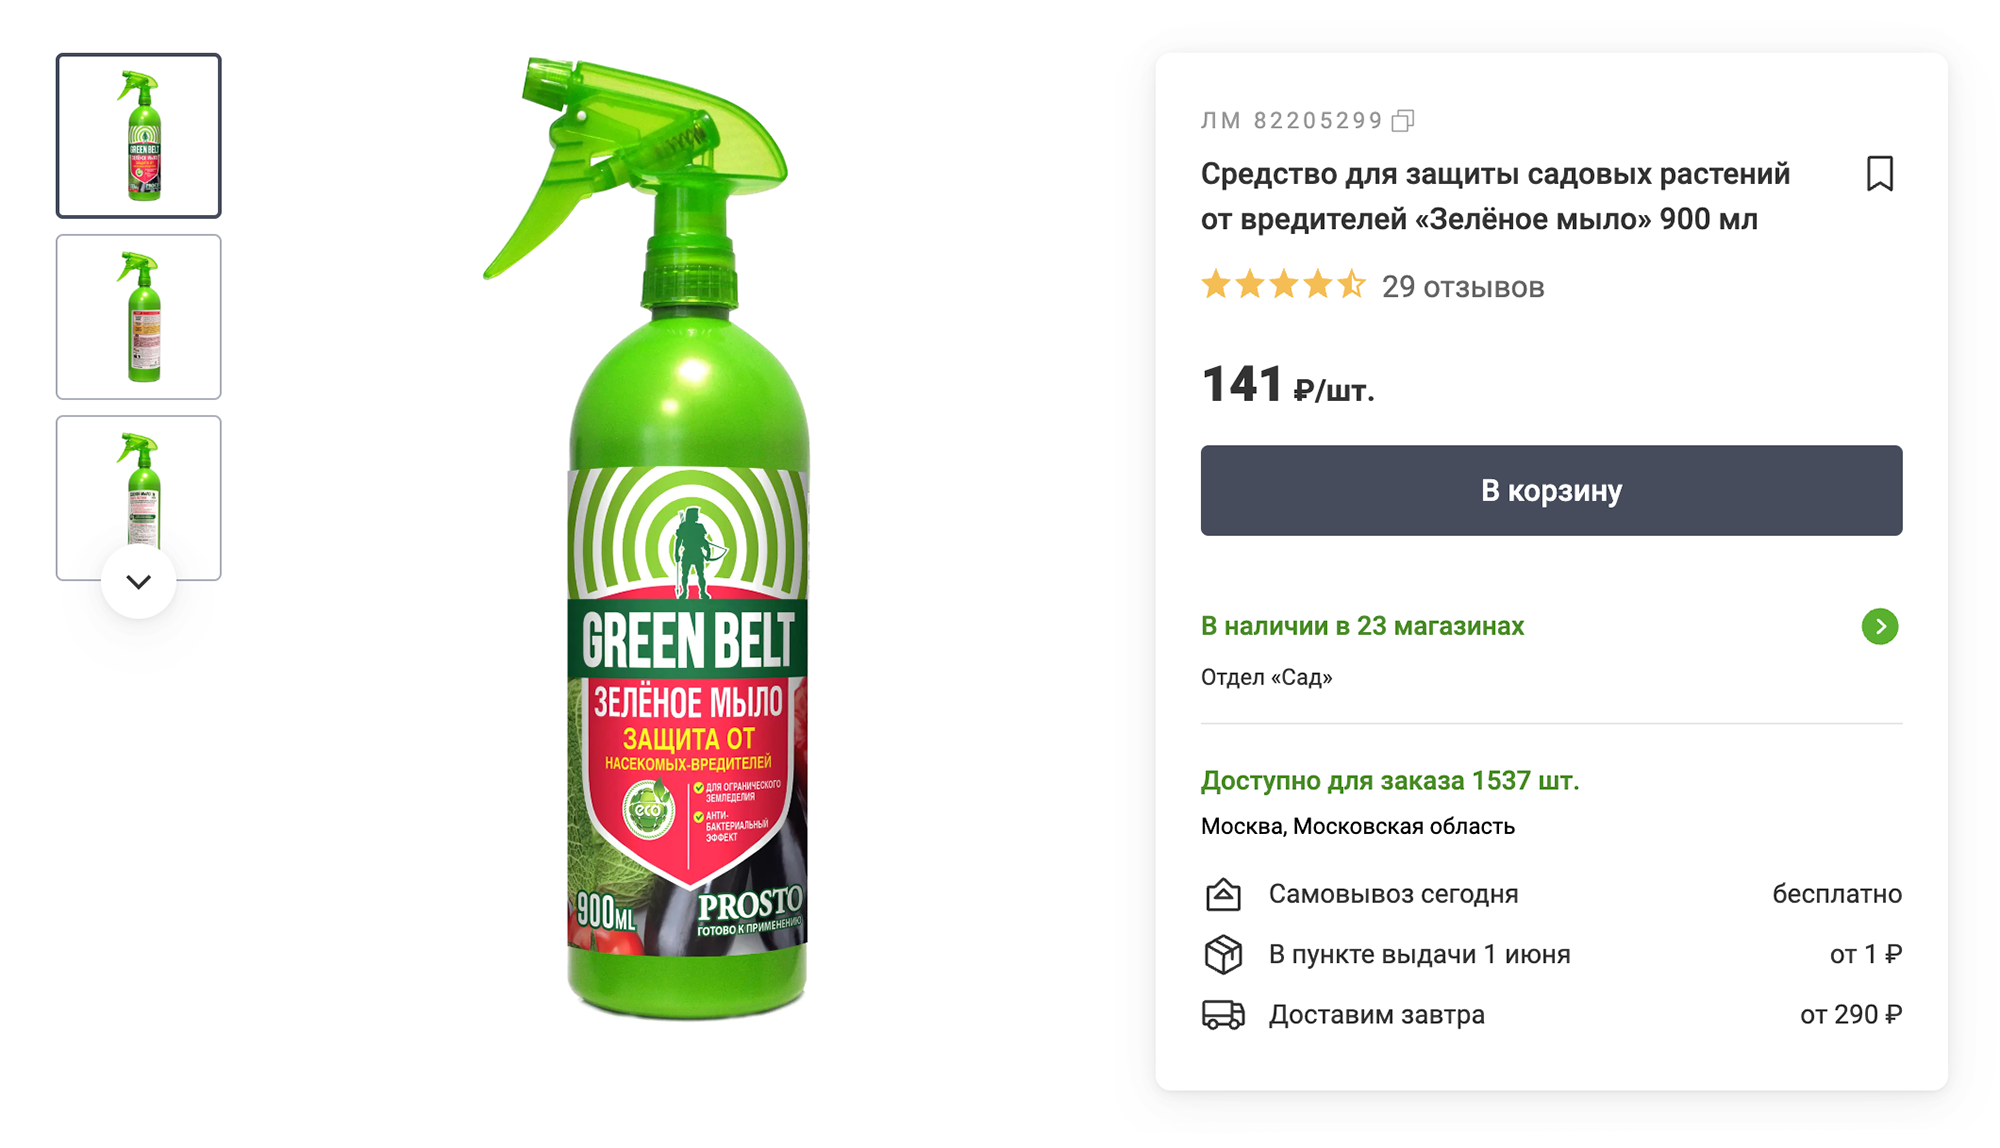 Зеленое мыло можно купить в любом садовом магазине или на маркетплейсе. Источник: leroymerlin.ru